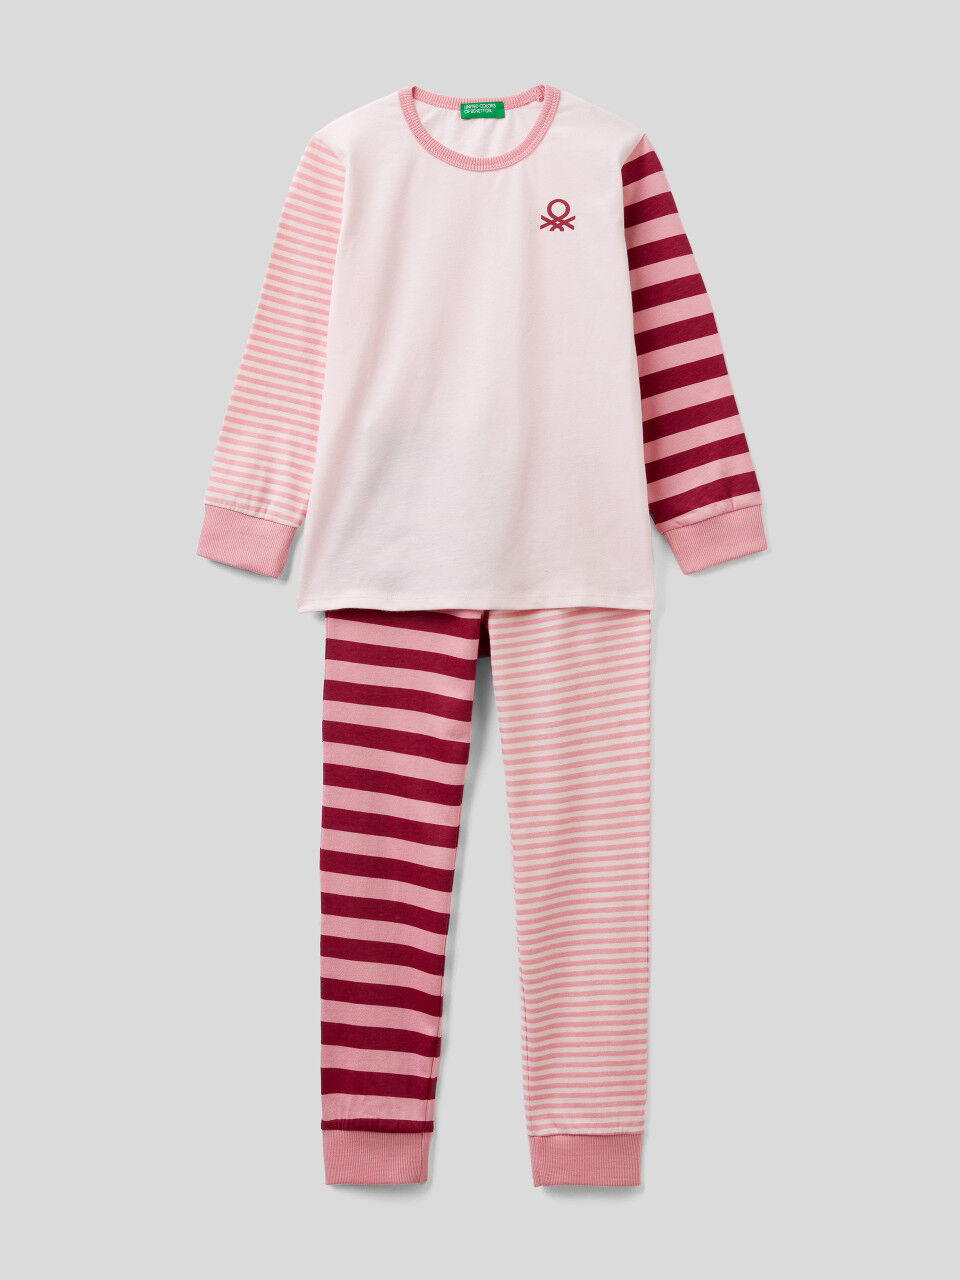 Striped pyjamas in warm cotton